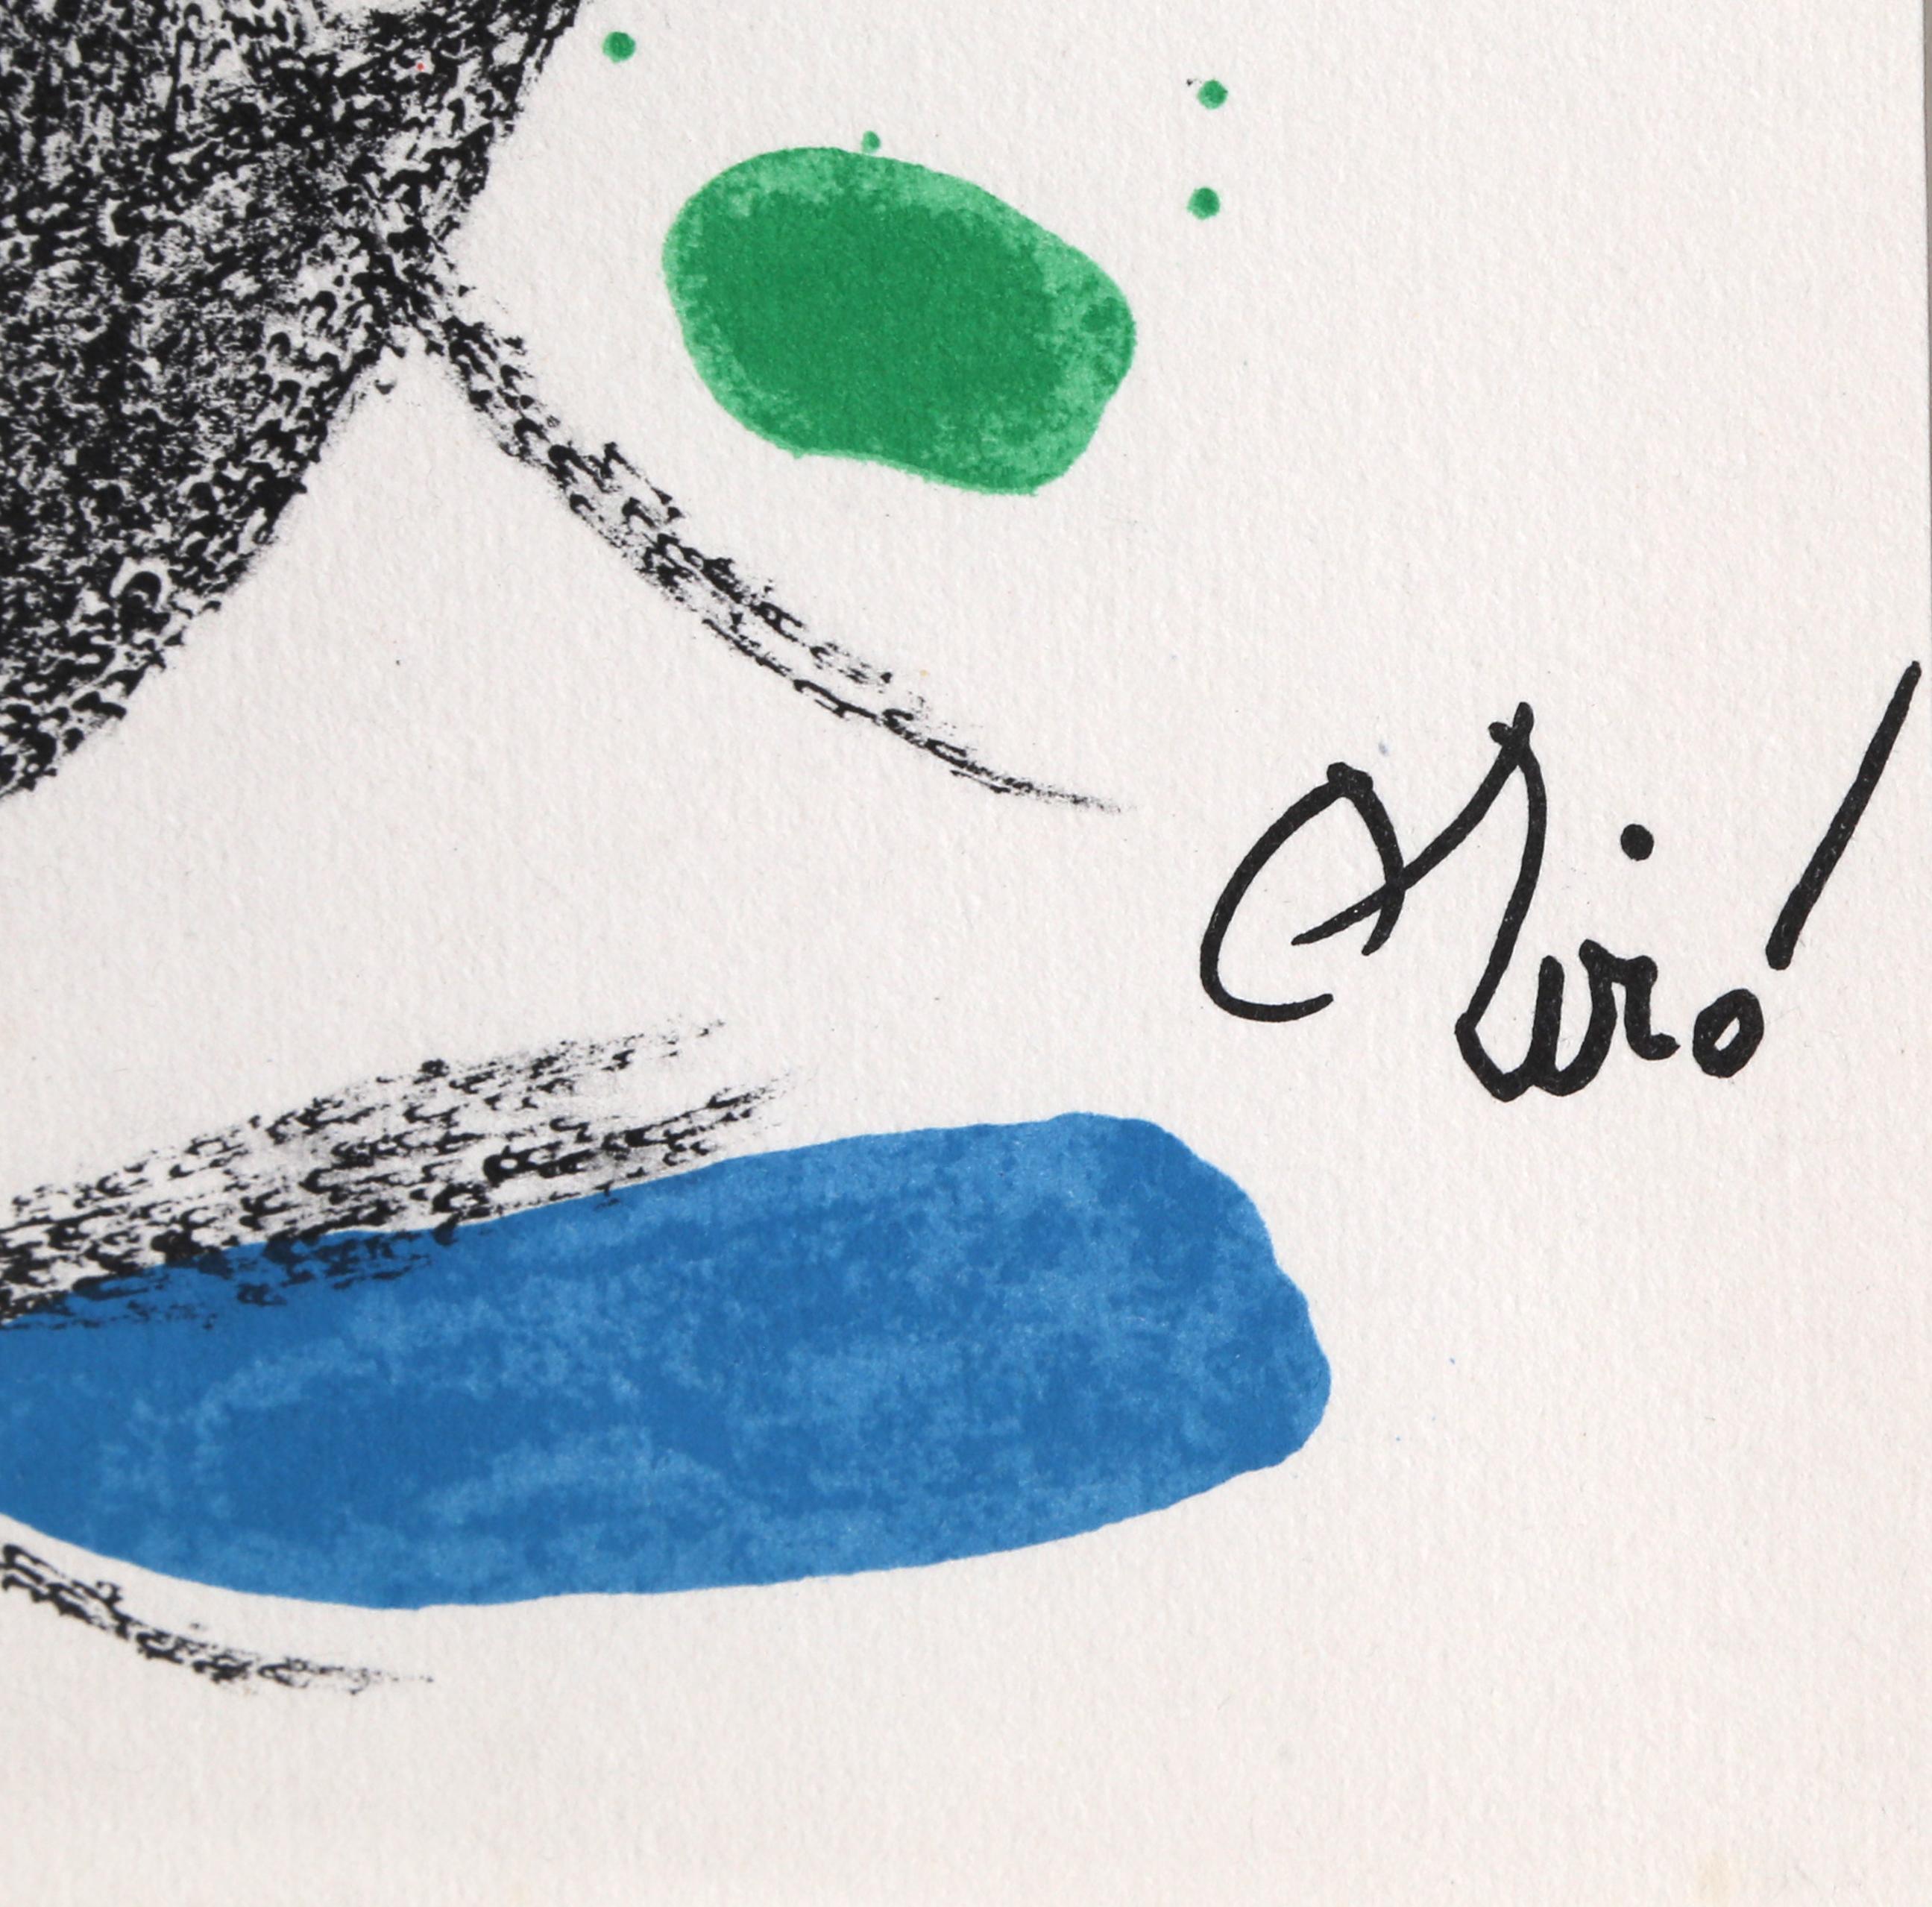 Maravillas mit Variaciones Acrosticas im Jardin de Miro (Number 16) – Print von Joan Miró